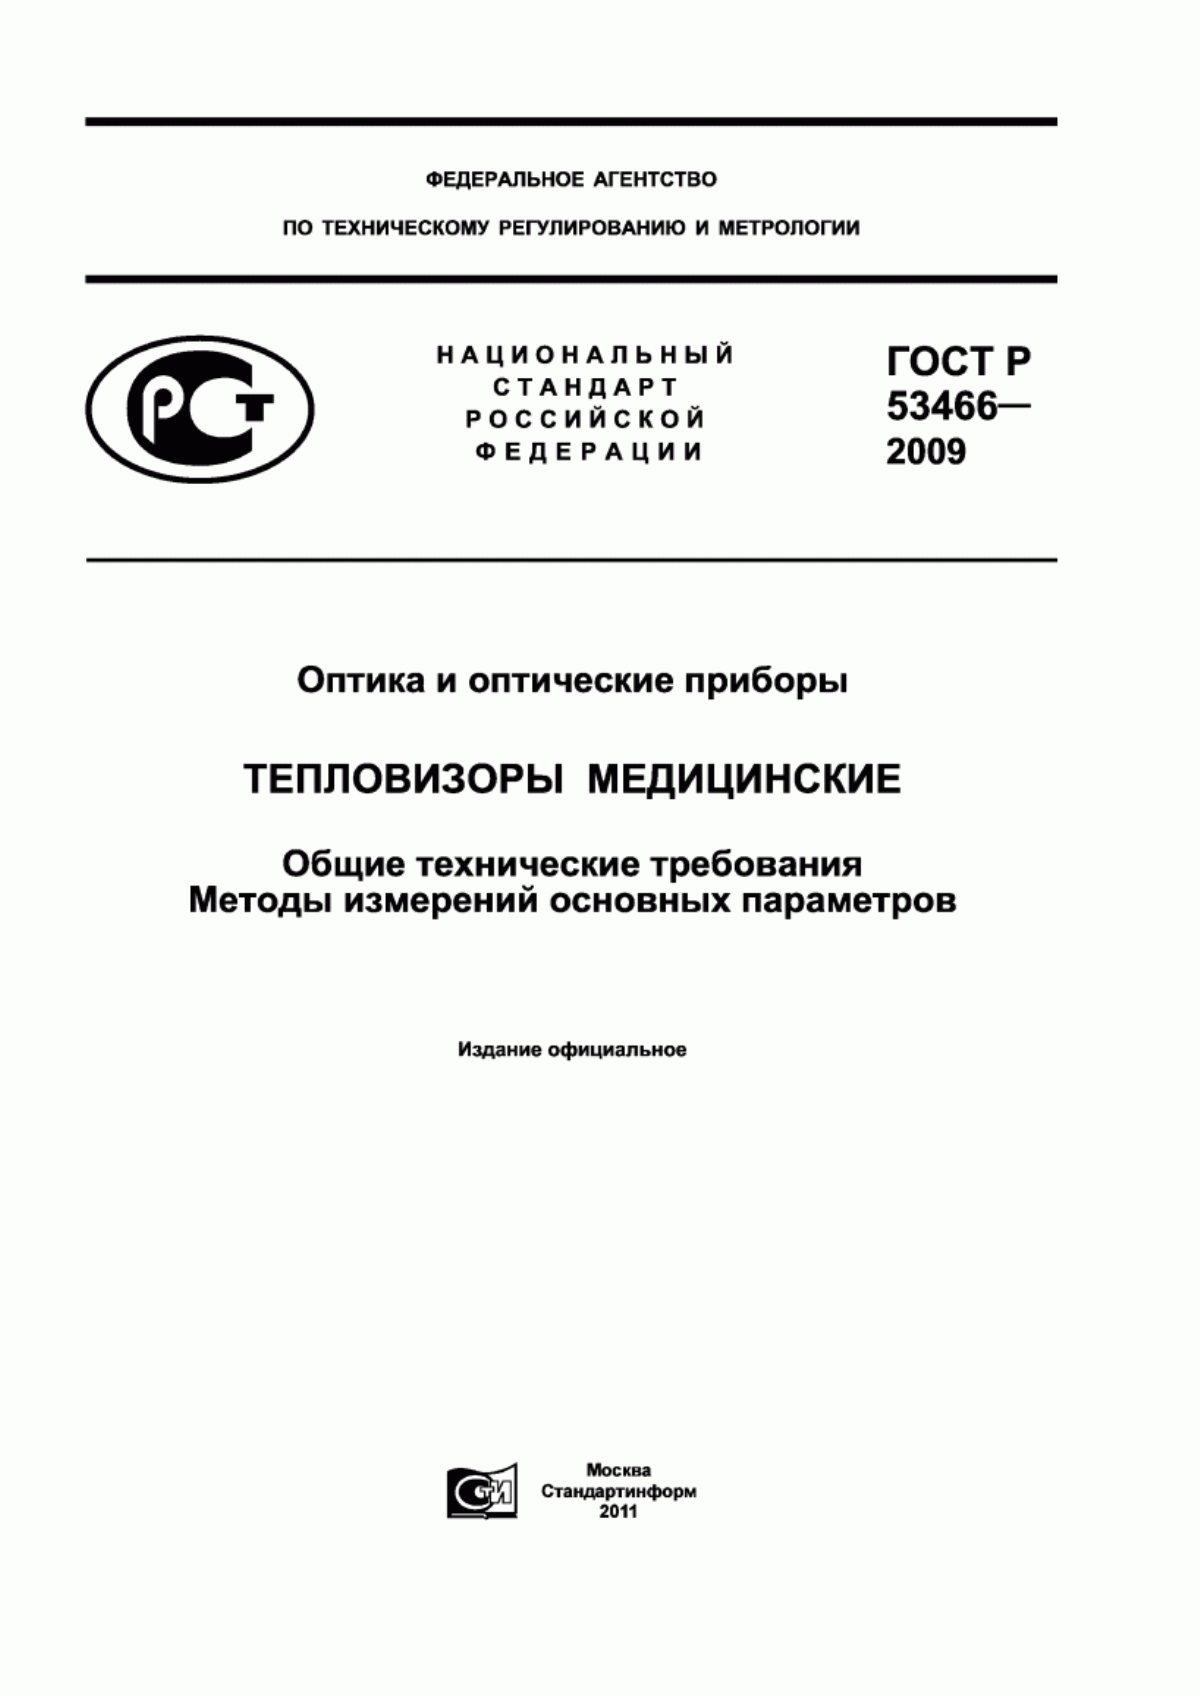 ГОСТ Р 53466-2009 Оптика и оптические приборы. Тепловизоры медицинские. Общие технические требования. Методы измерений основных параметров